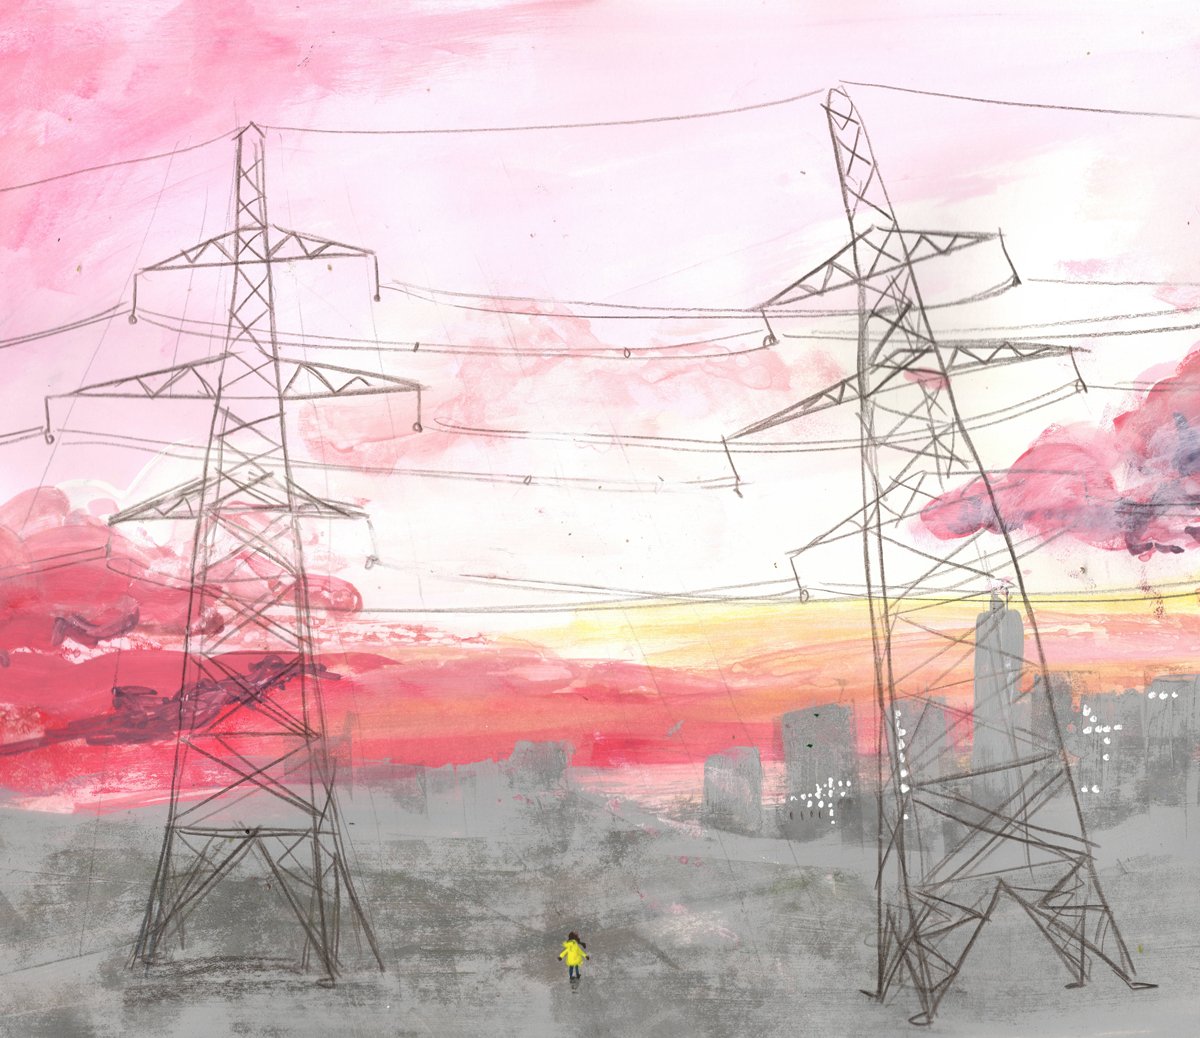 jenny-bloomfield-pink-sky-and-pylons-illustration.jpg